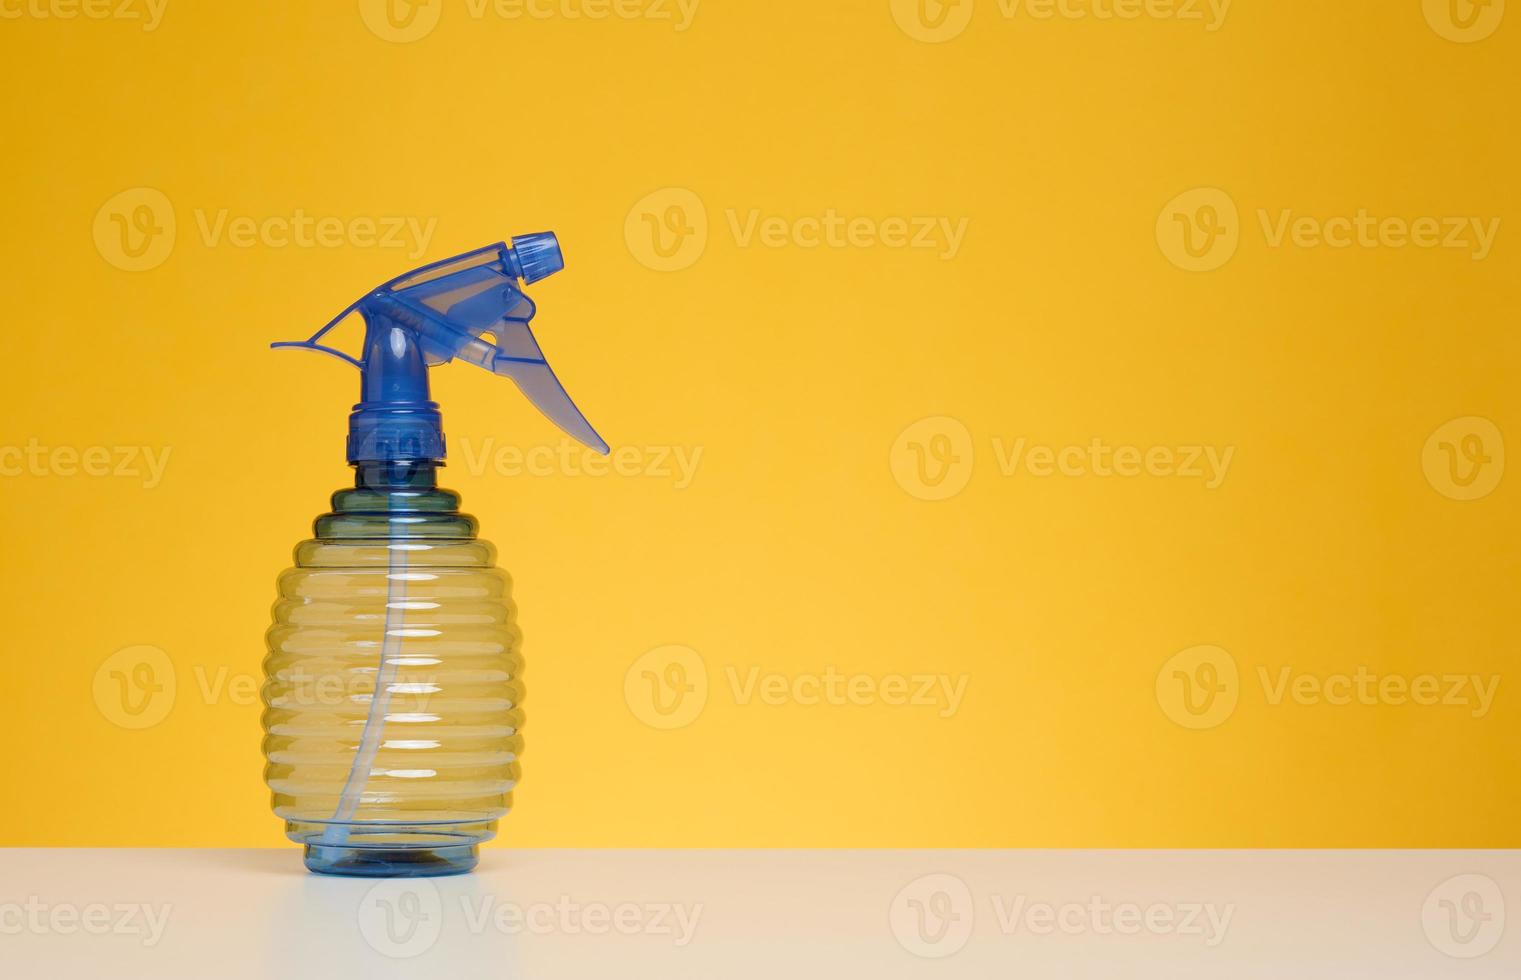 plast flaska med spray för strykning kläder, vattning växter på en vit tabell, gul bakgrund foto